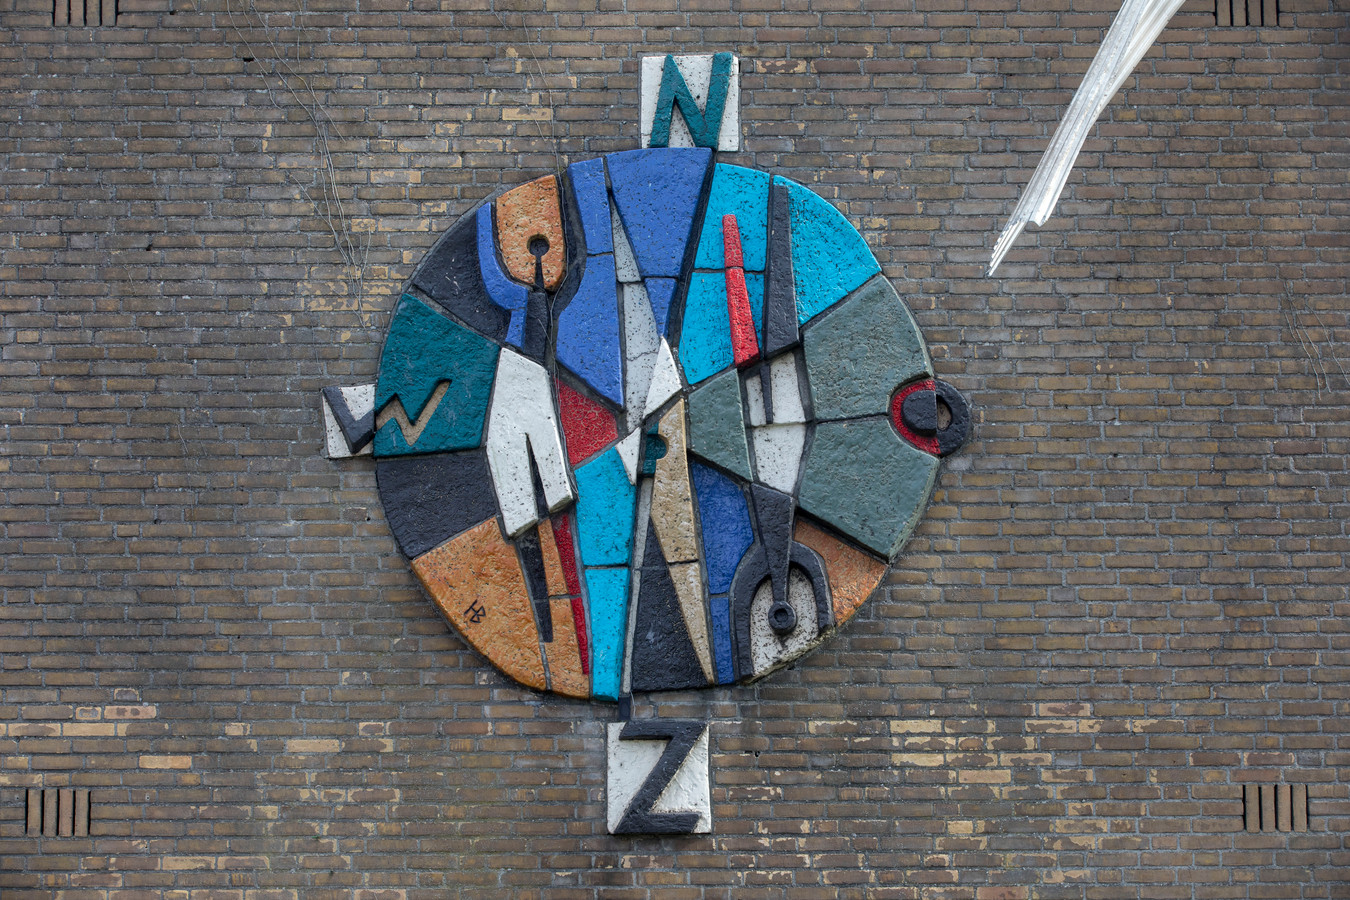 Het kunstwerk dat al bijna een halve eeuw aan de voormalige school in Valkenswaard hangt.